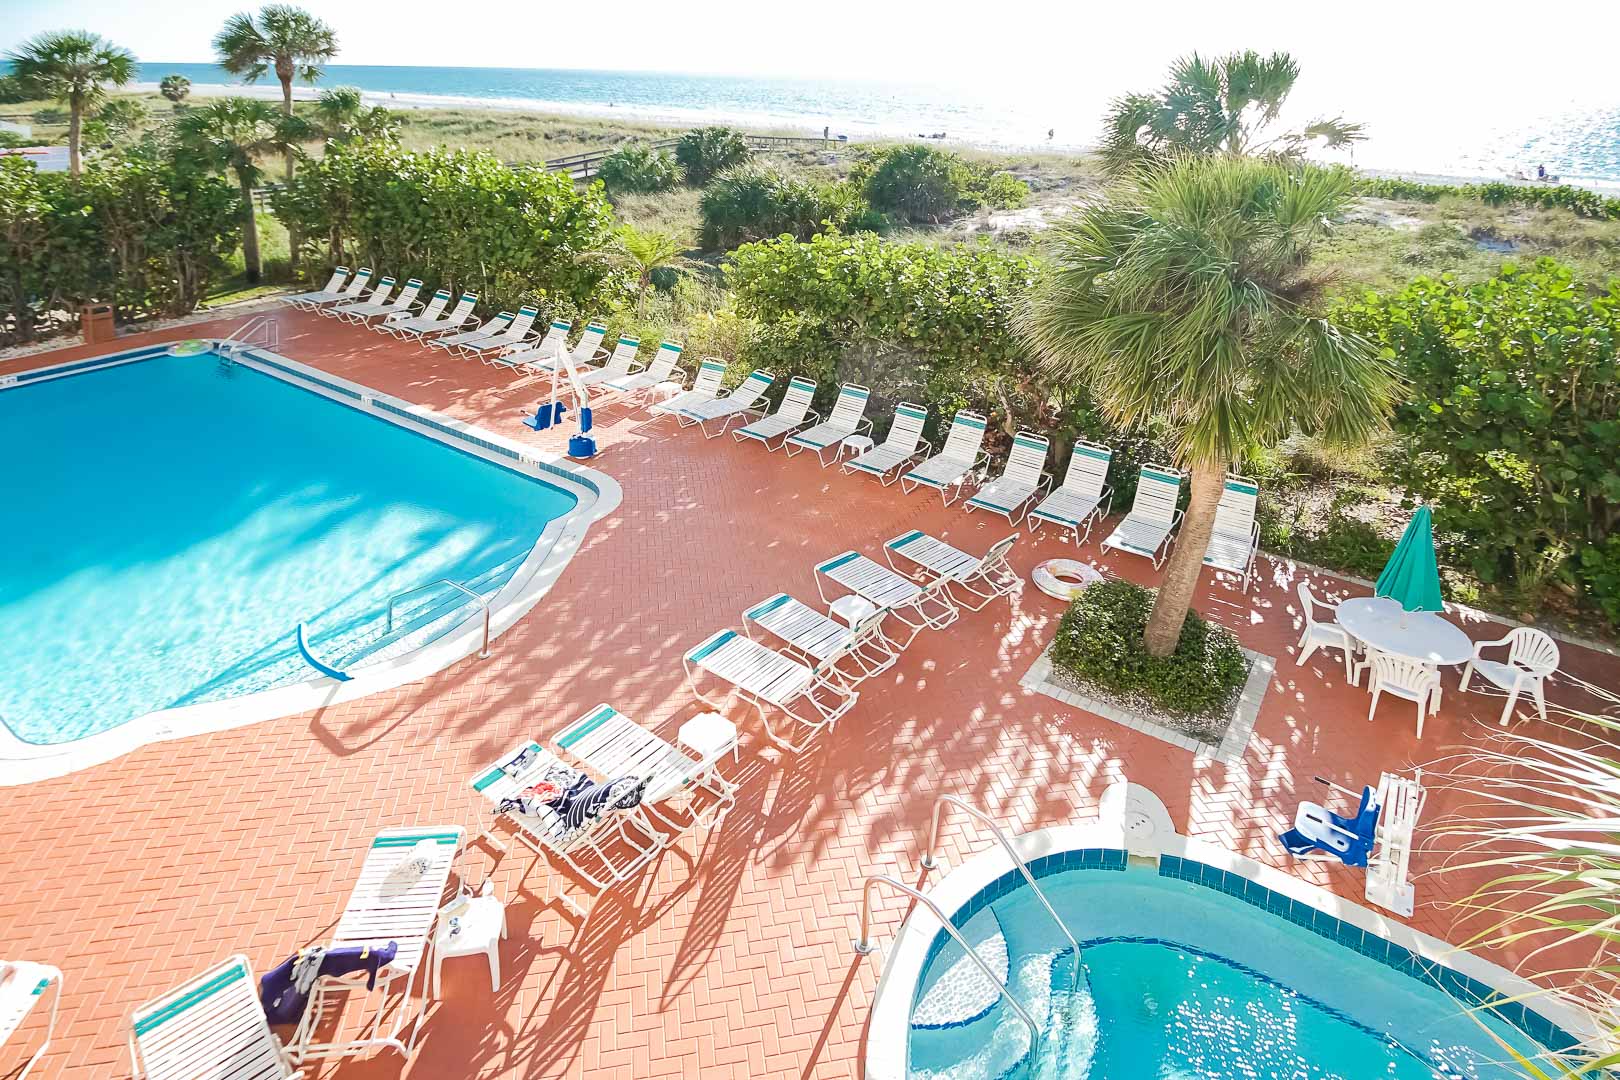 A spacious swimming pool at VRI's Sand Pebble Resort in Treasure Island, Florida.